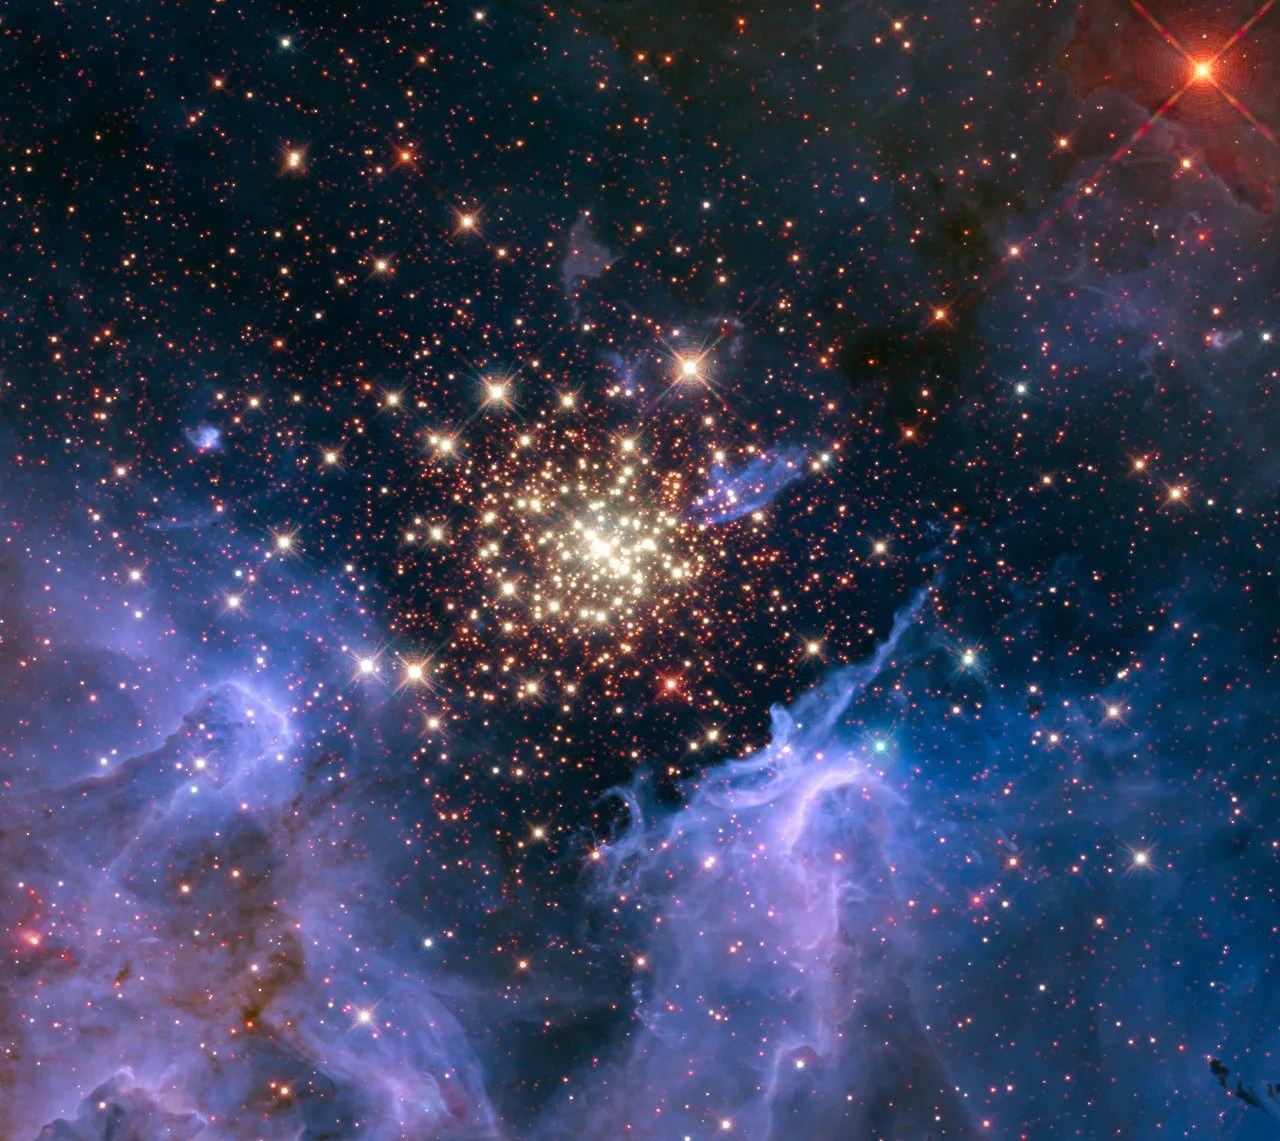 在黑色背景下，星团填充了图像的中心。图的底部和两侧环绕着一个紫色的“U”形云，将星团嵌套起来。右上角有一颗明亮的星星。